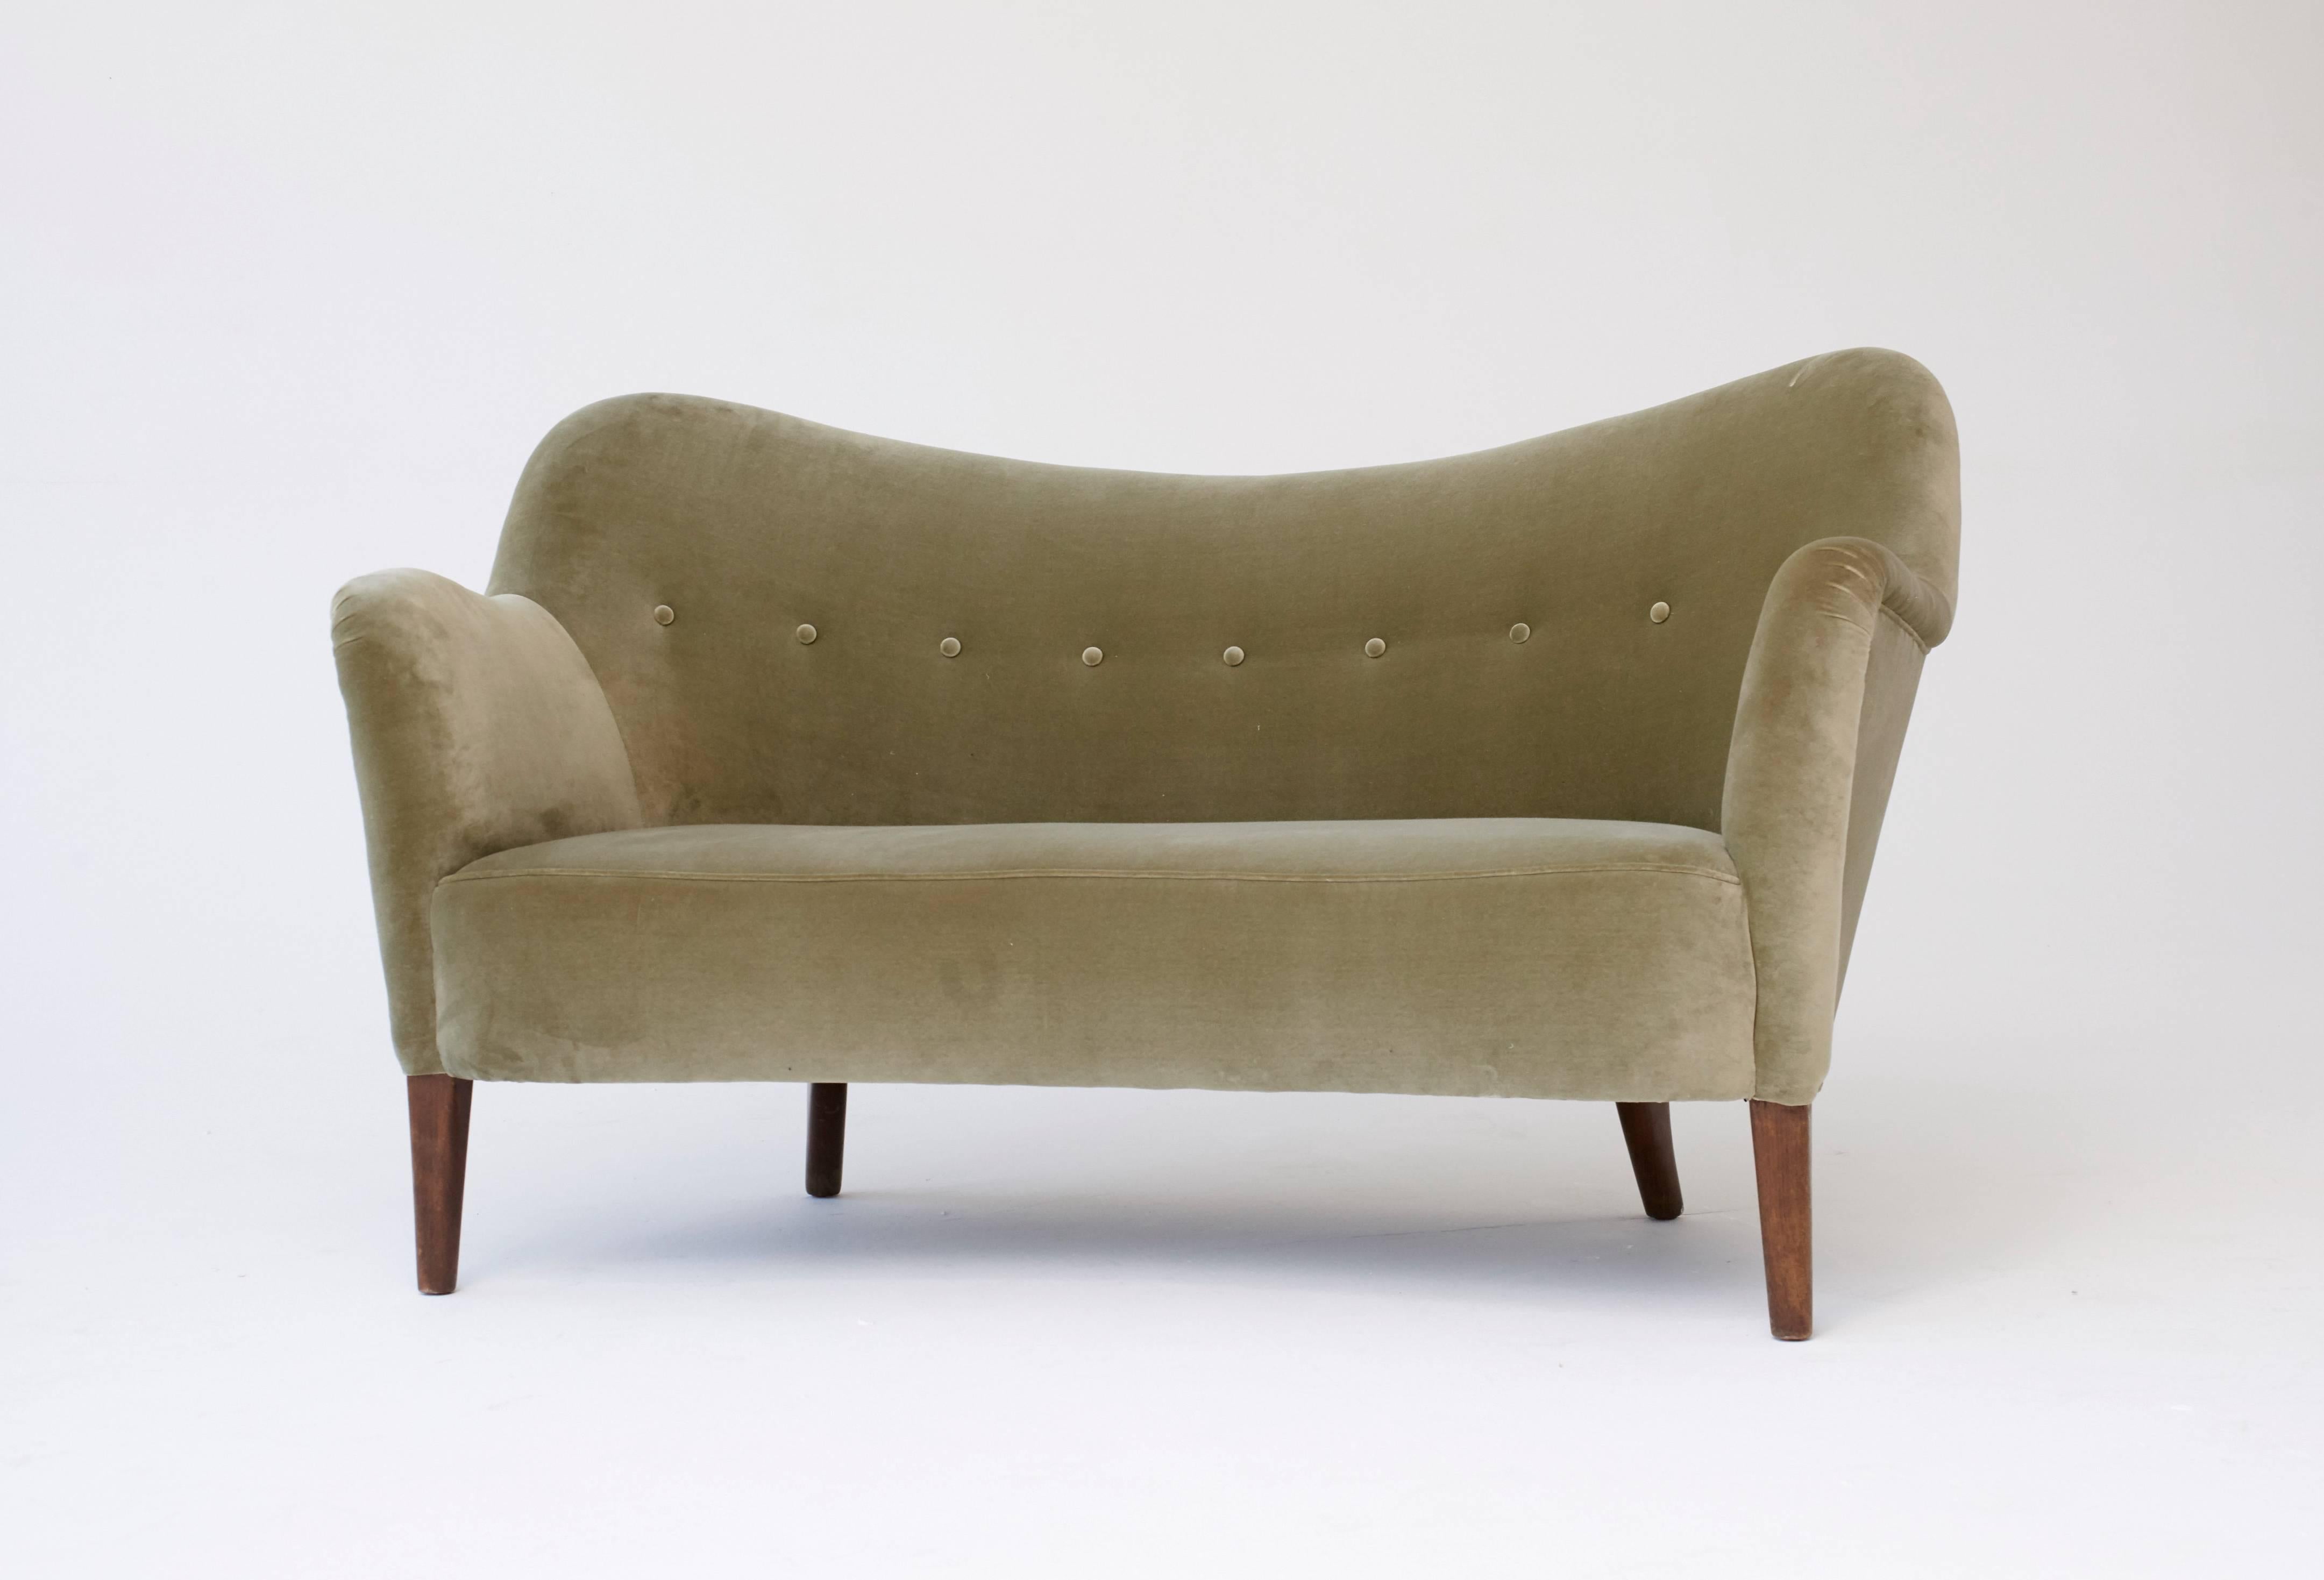 Elegant curved 1950s sofa or loveseat, model 185, Slagelse Mobler, Denmark, 1950s.